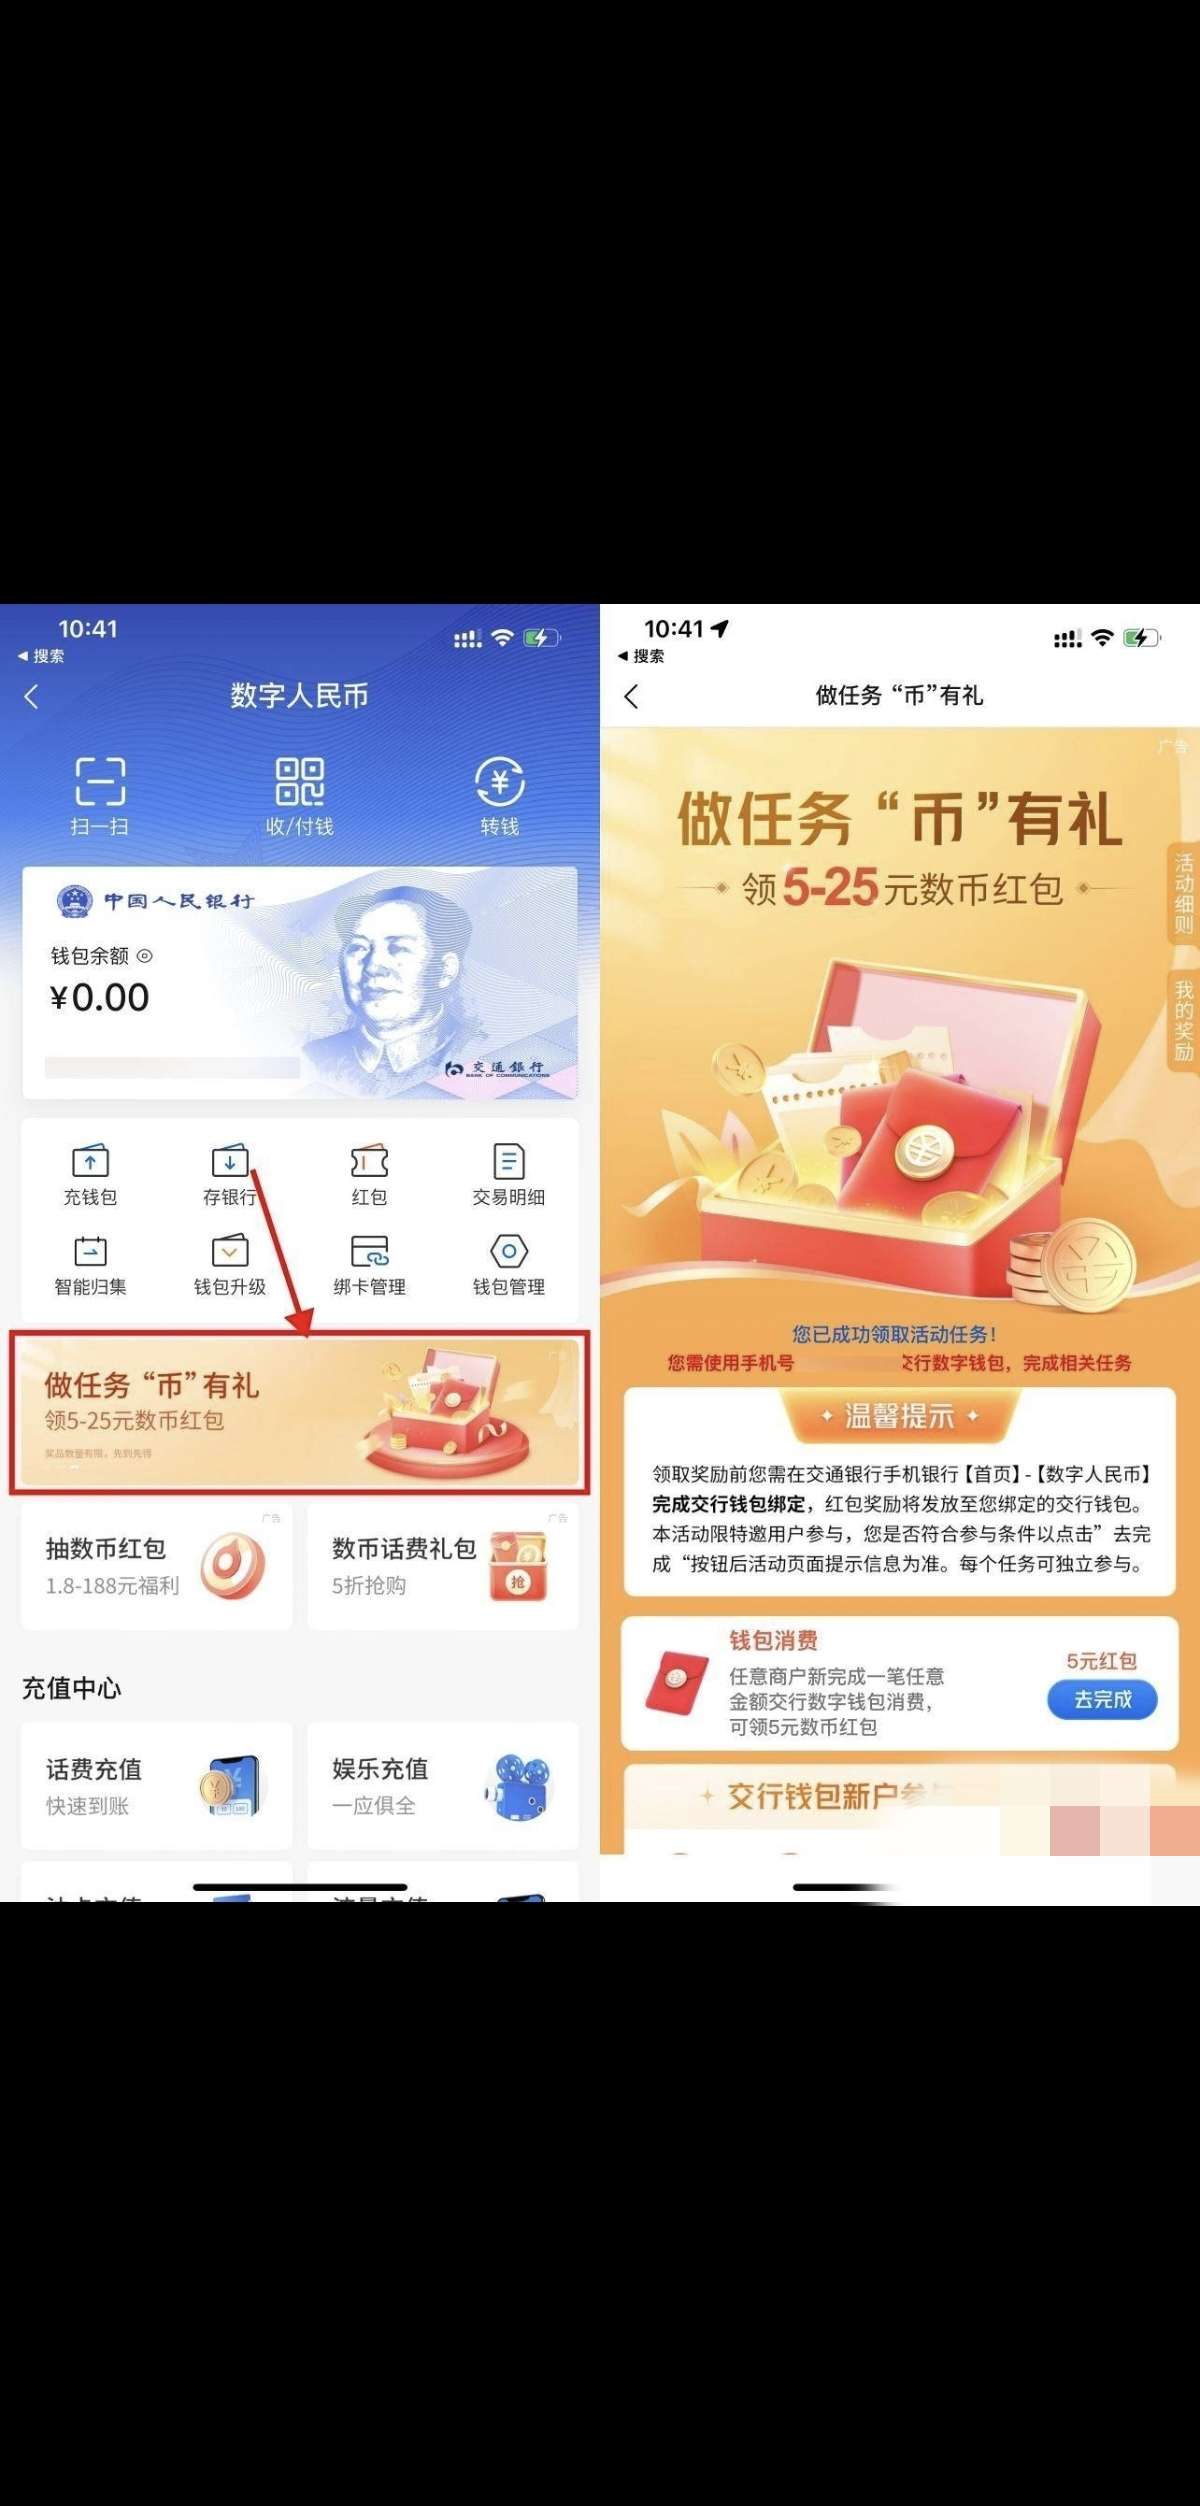 【现金红包】交行app搜索“数字人民币”_福利红包